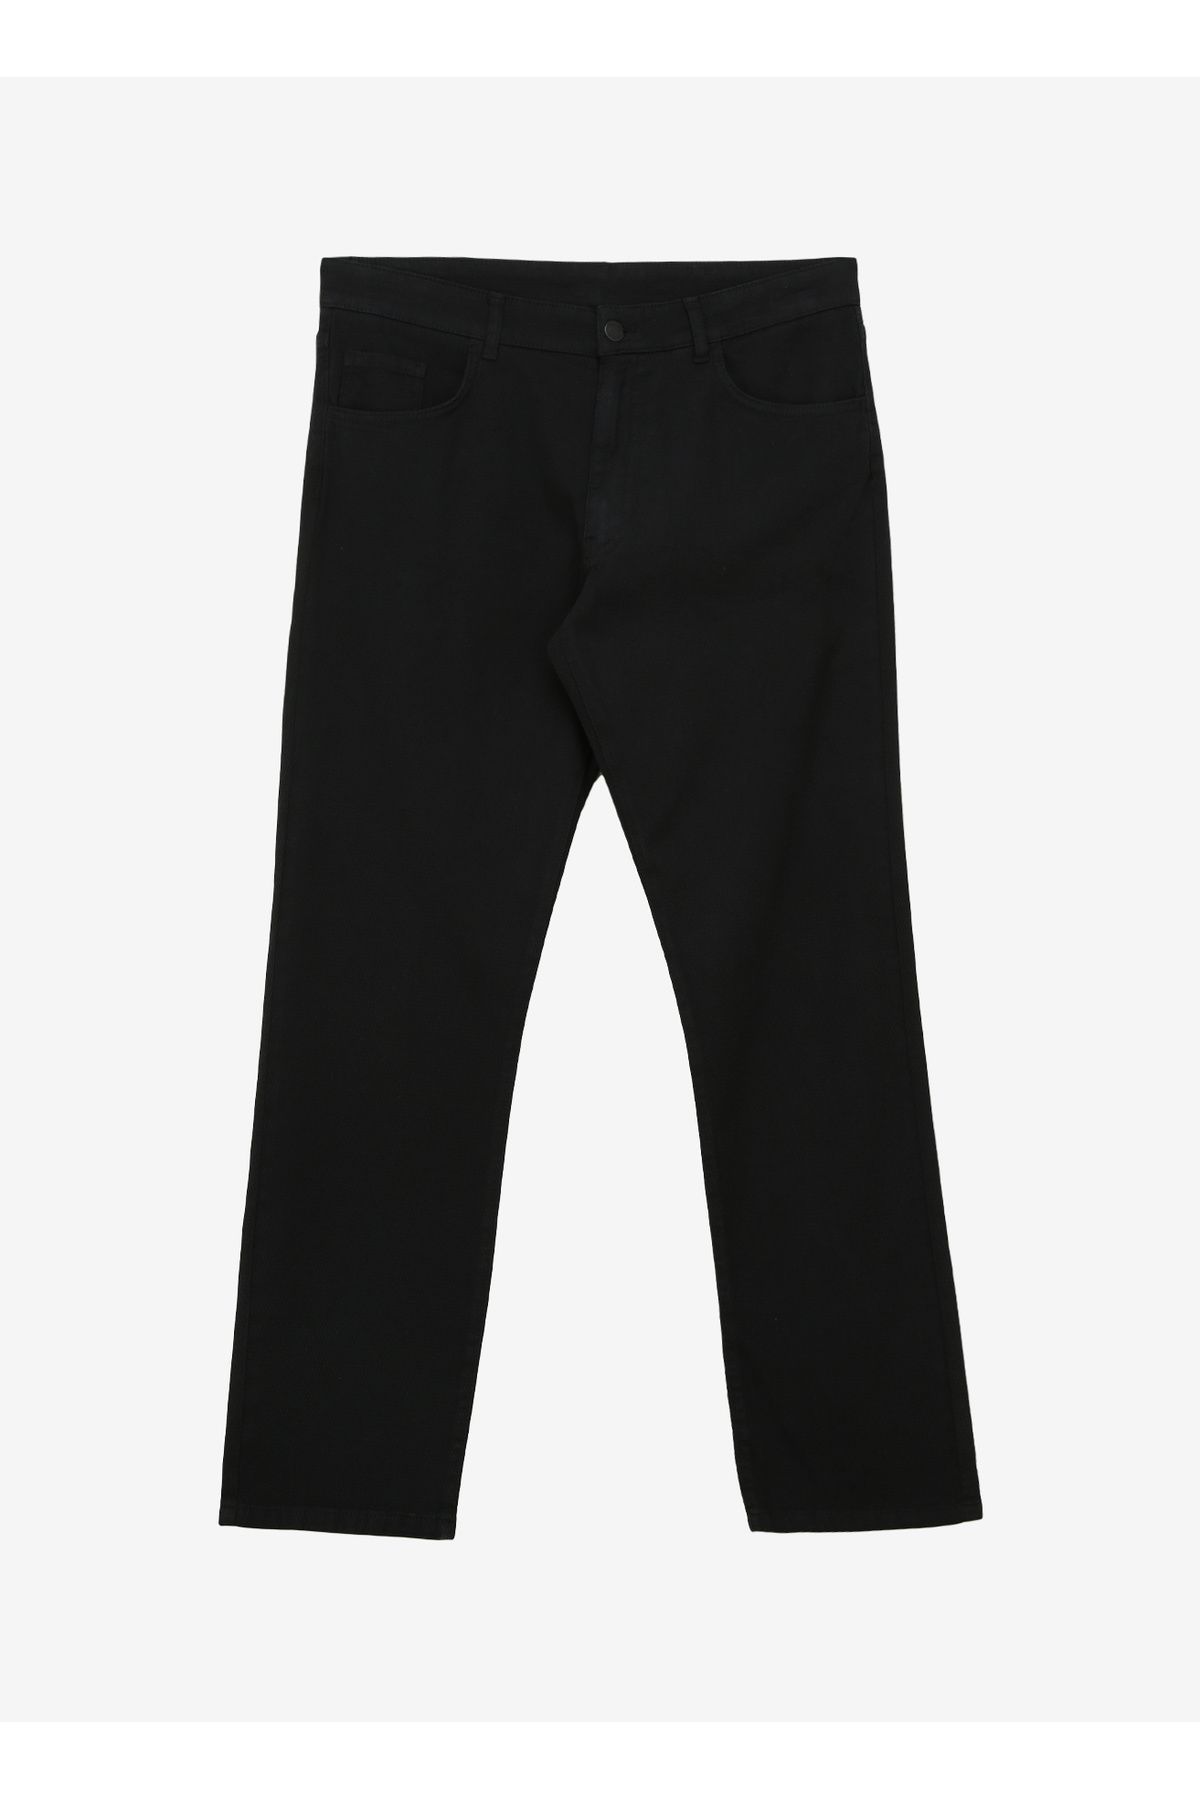 Altınyıldız Classics Altınyıldız Classics Normal Bel Boru Paça Comfort Fit Siyah Erkek Pantolon 4A0124100061